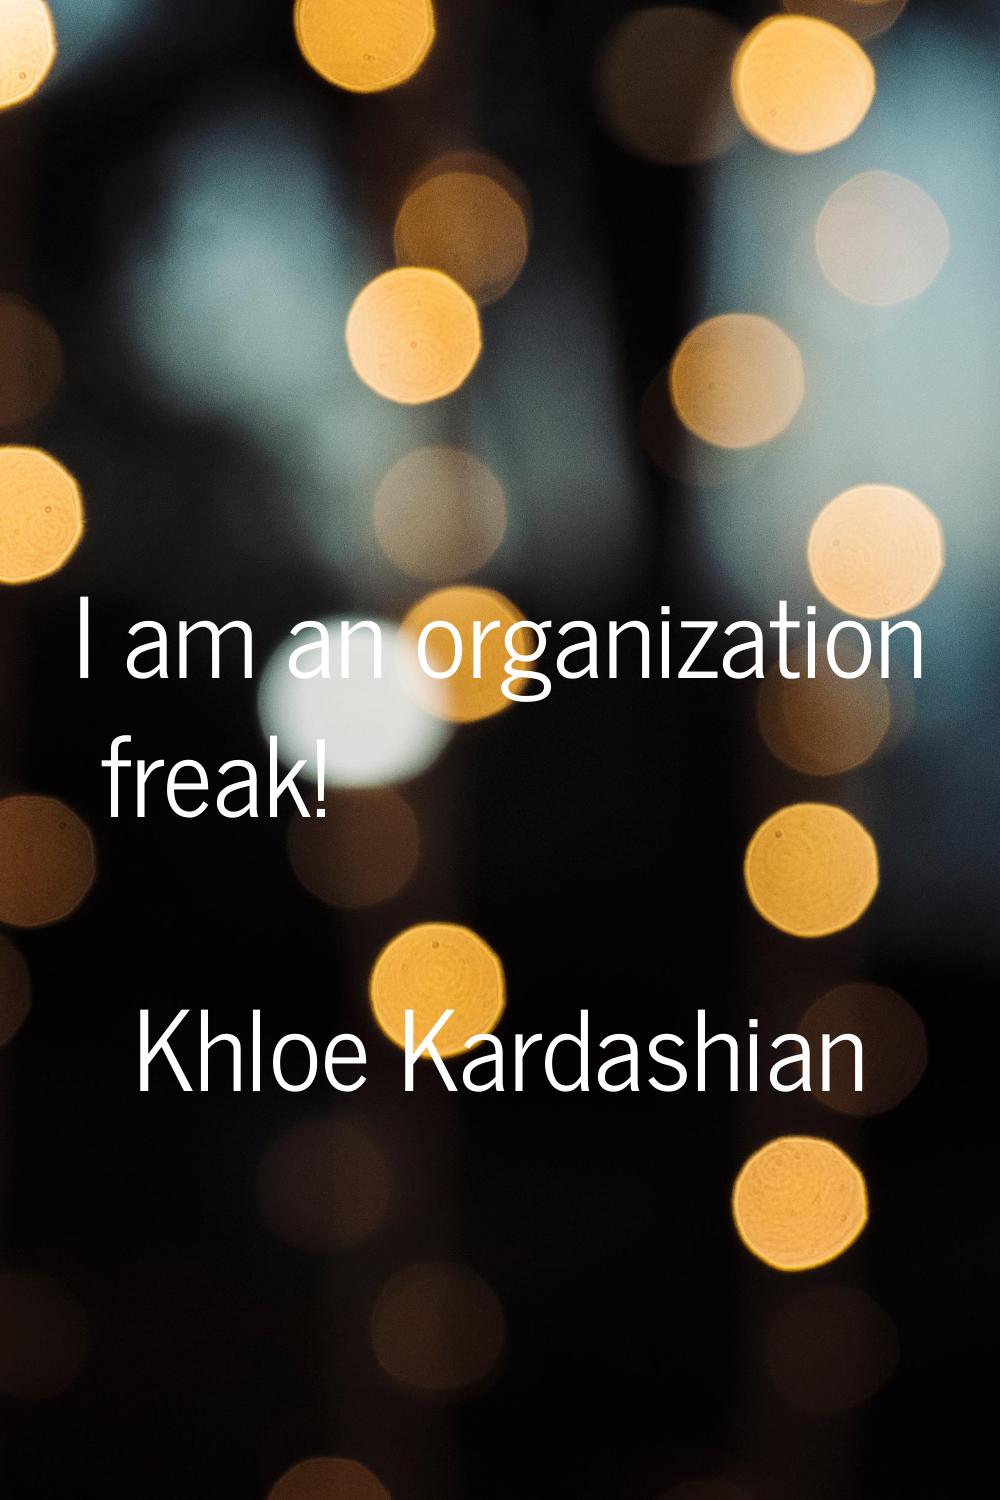 I am an organization freak!